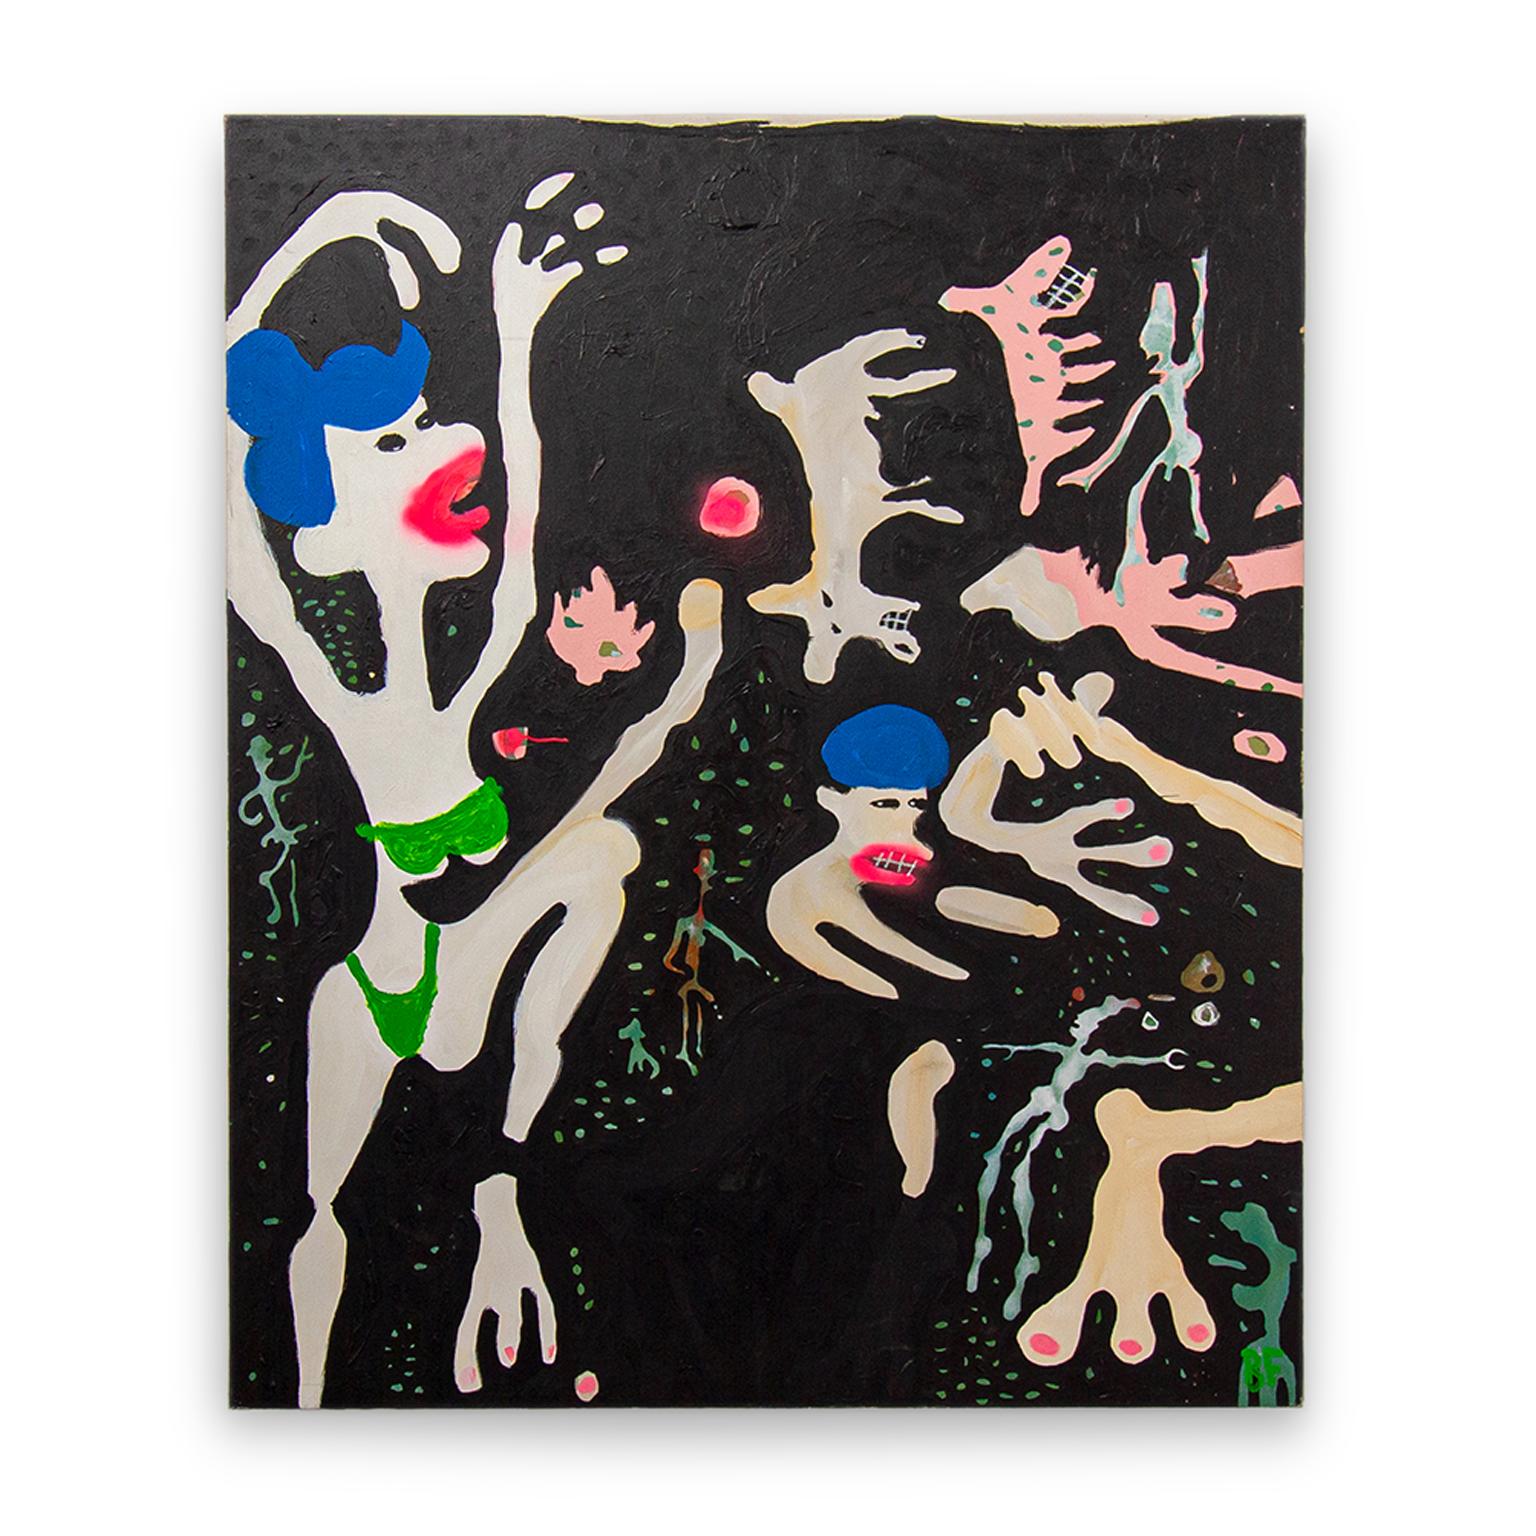 Bikini vert #2

Peinture figurative mixte sur toile de l'artiste Brad Fisher

72 × 60 × 1.5 in

L'expédition n'est pas incluse. Voir nos politiques d'expédition. Veuillez nous contacter pour obtenir un devis d'expédition et des options de